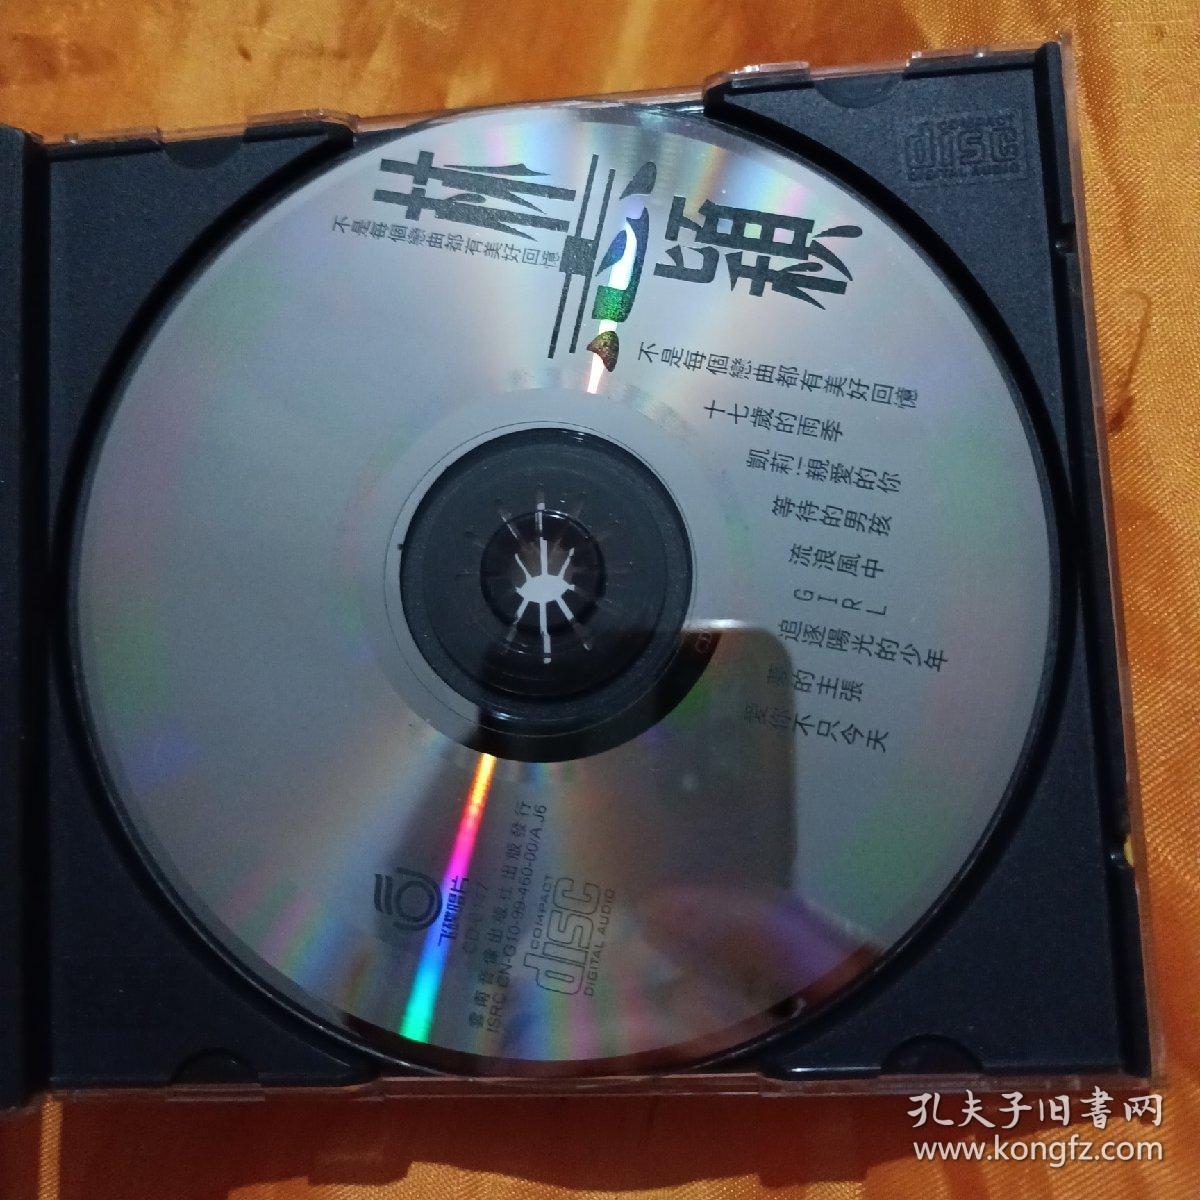 飞碟唱片CD歌碟 林志颖 不是每个恋曲都有美好回忆